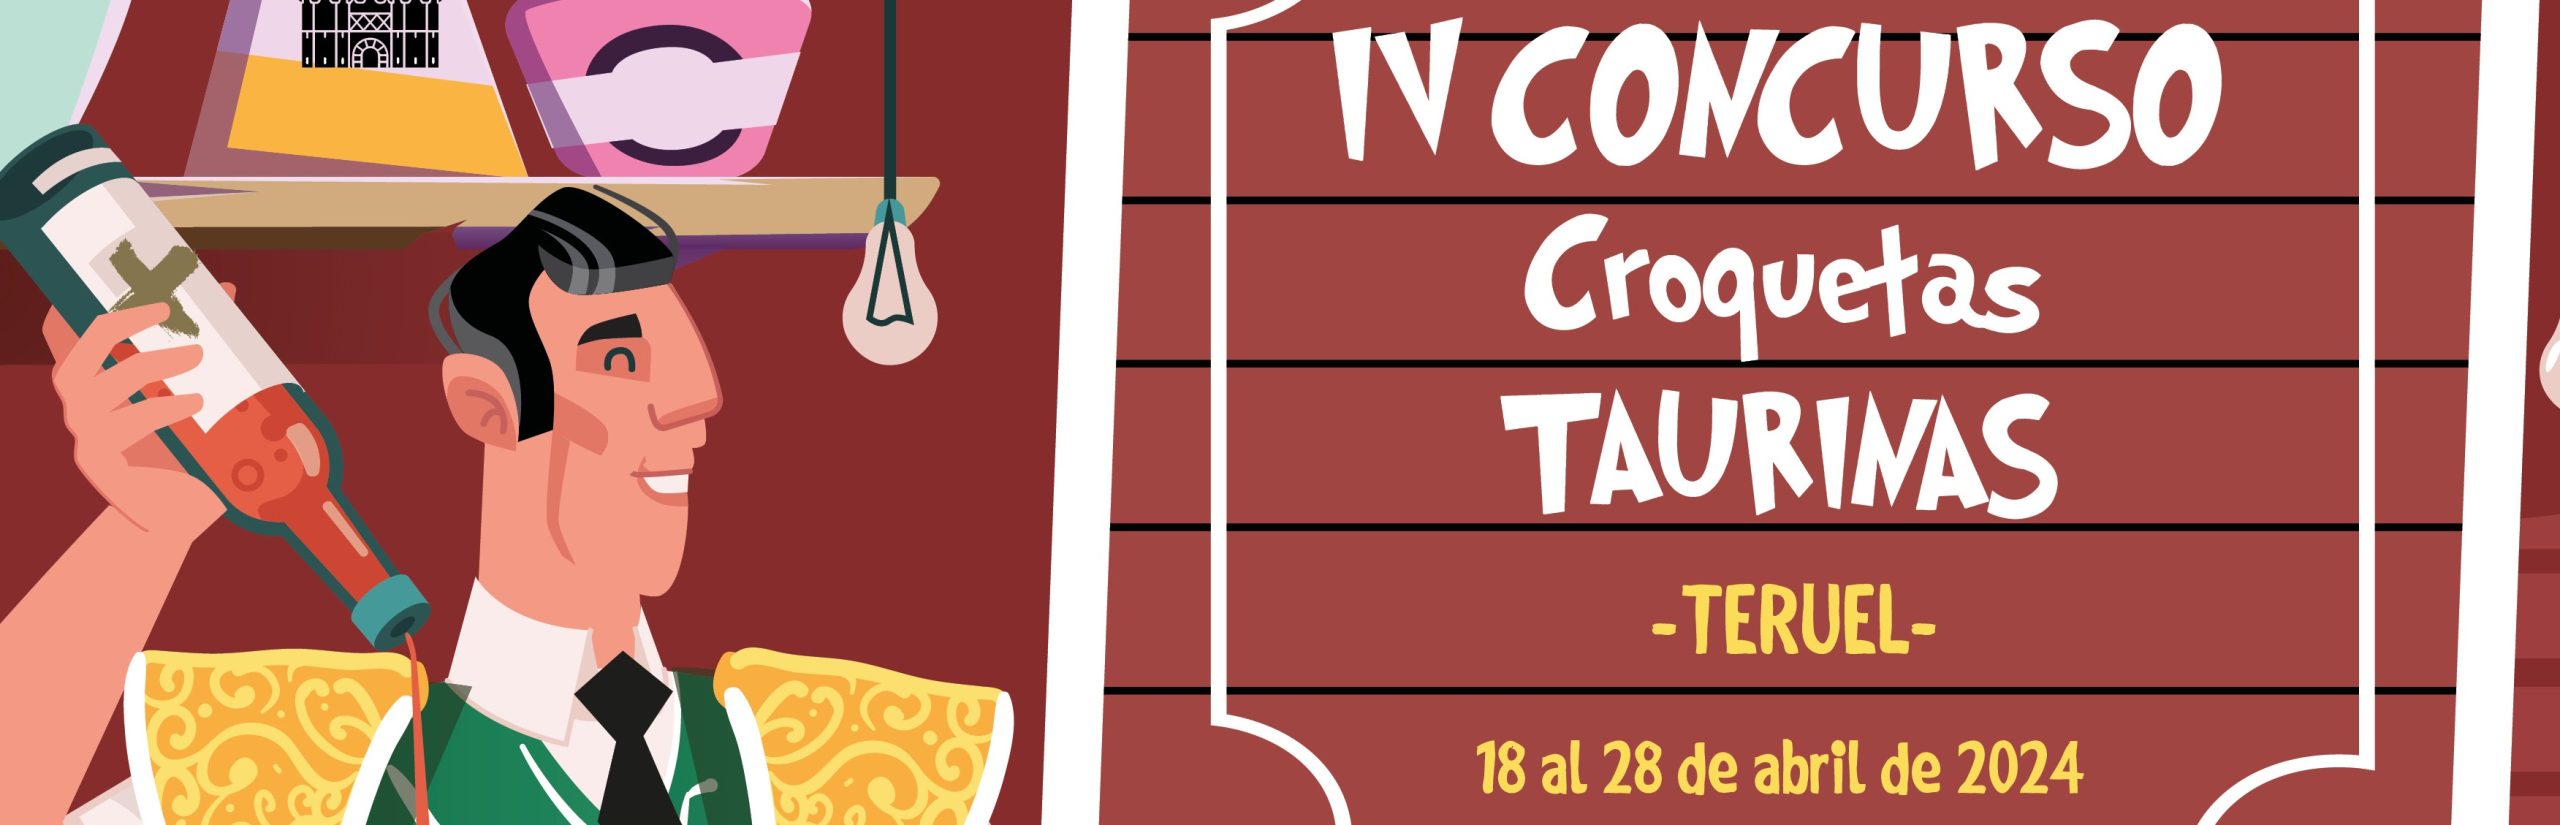 Arranca el IV Concurso de Croquetas, del 18 al 28 de abril